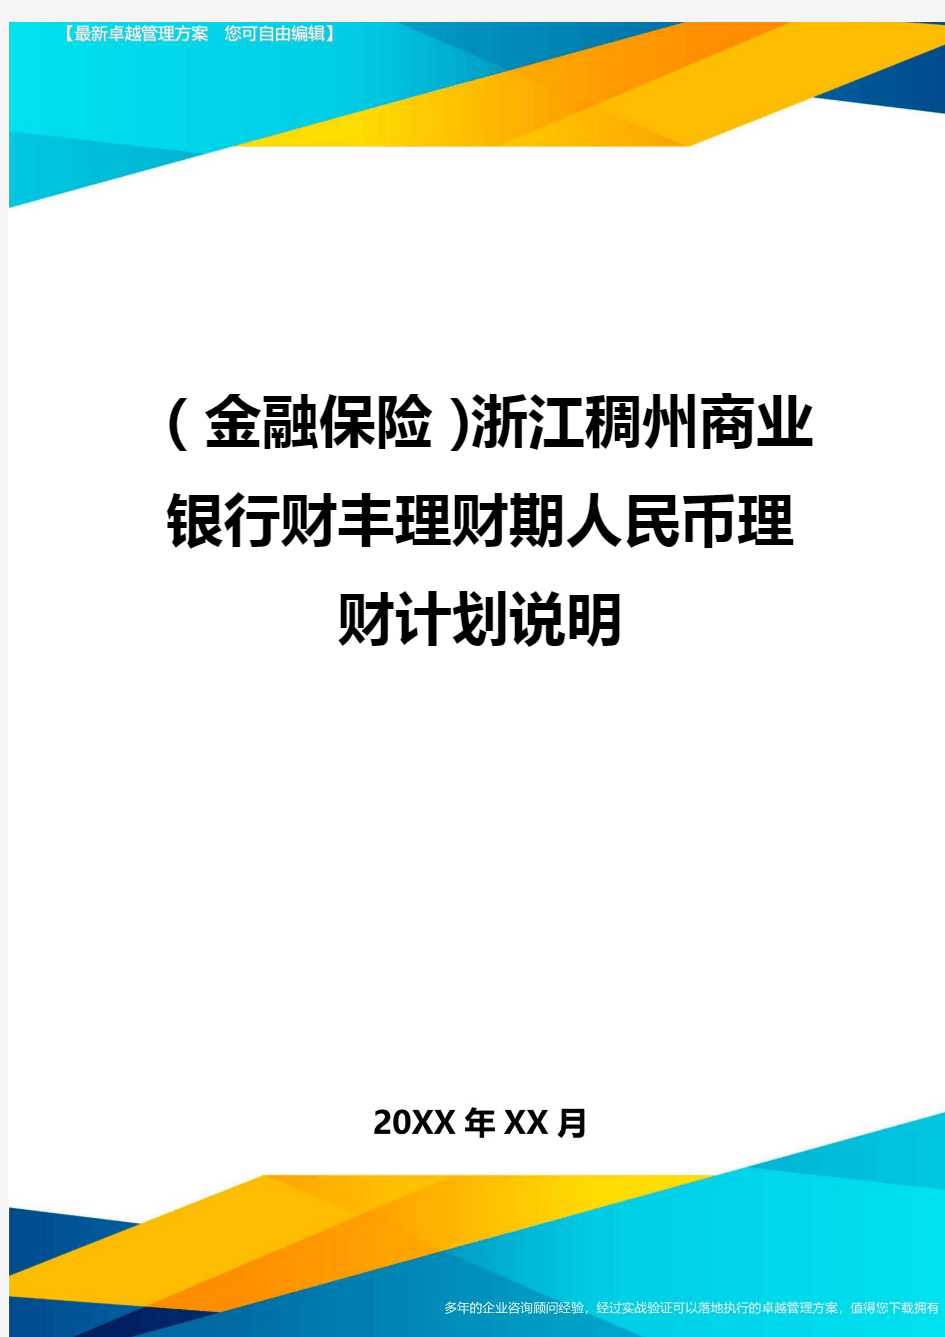 2020年(金融保险)浙江稠州商业银行财丰理财期人民币理财计划说明